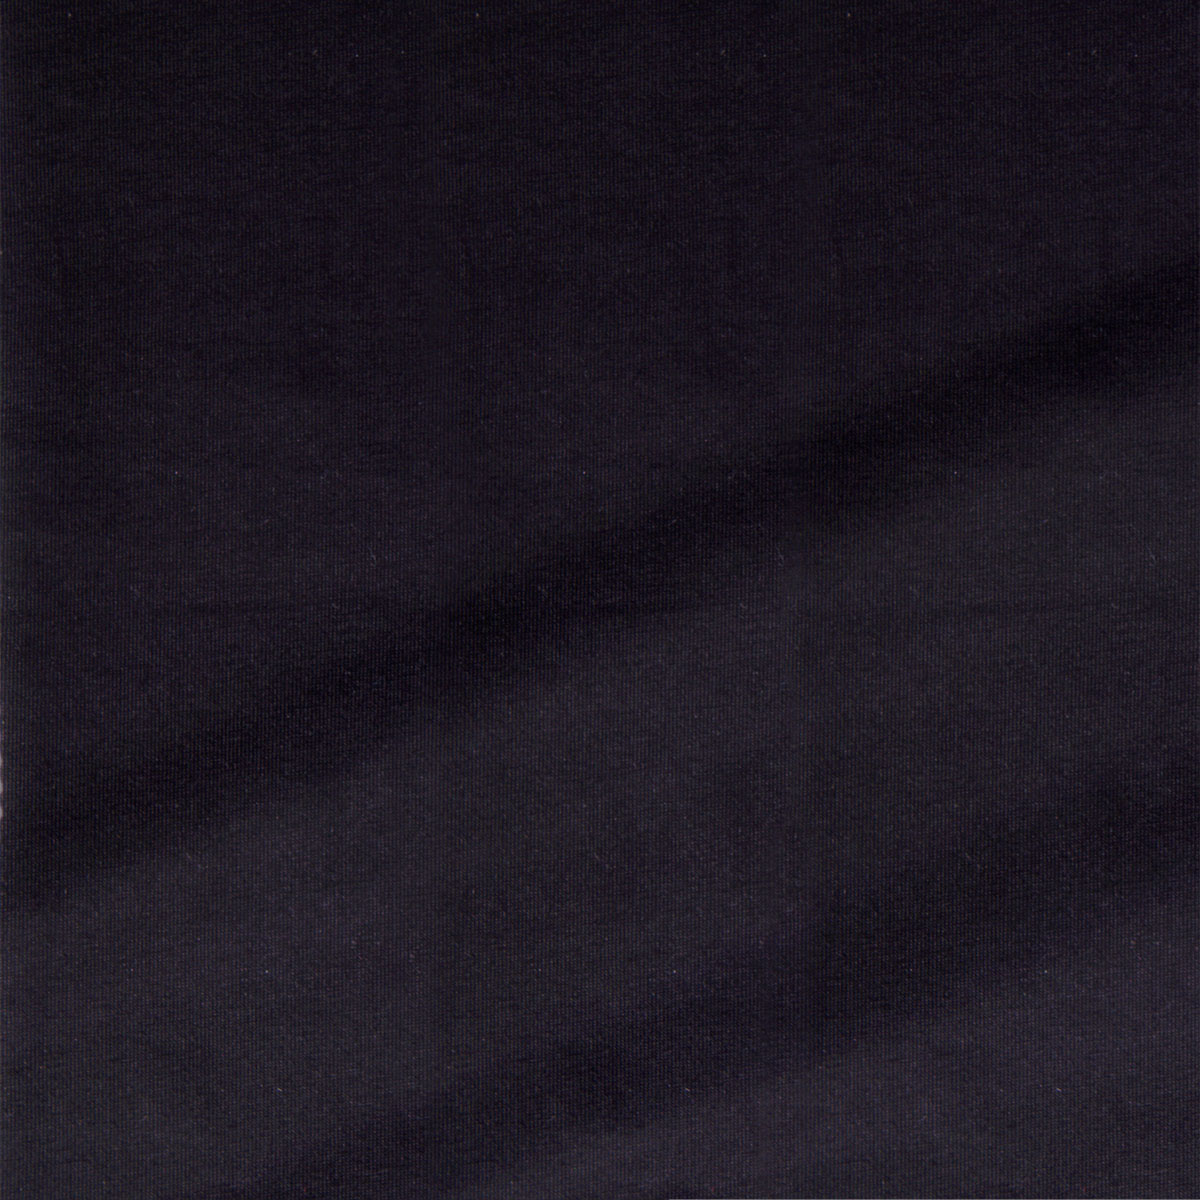 Dekostoff Lilly Uni schwarz in 1,6m Breite (METERWARE) Baumwollstoff Stoff aus 95% Baumwolle